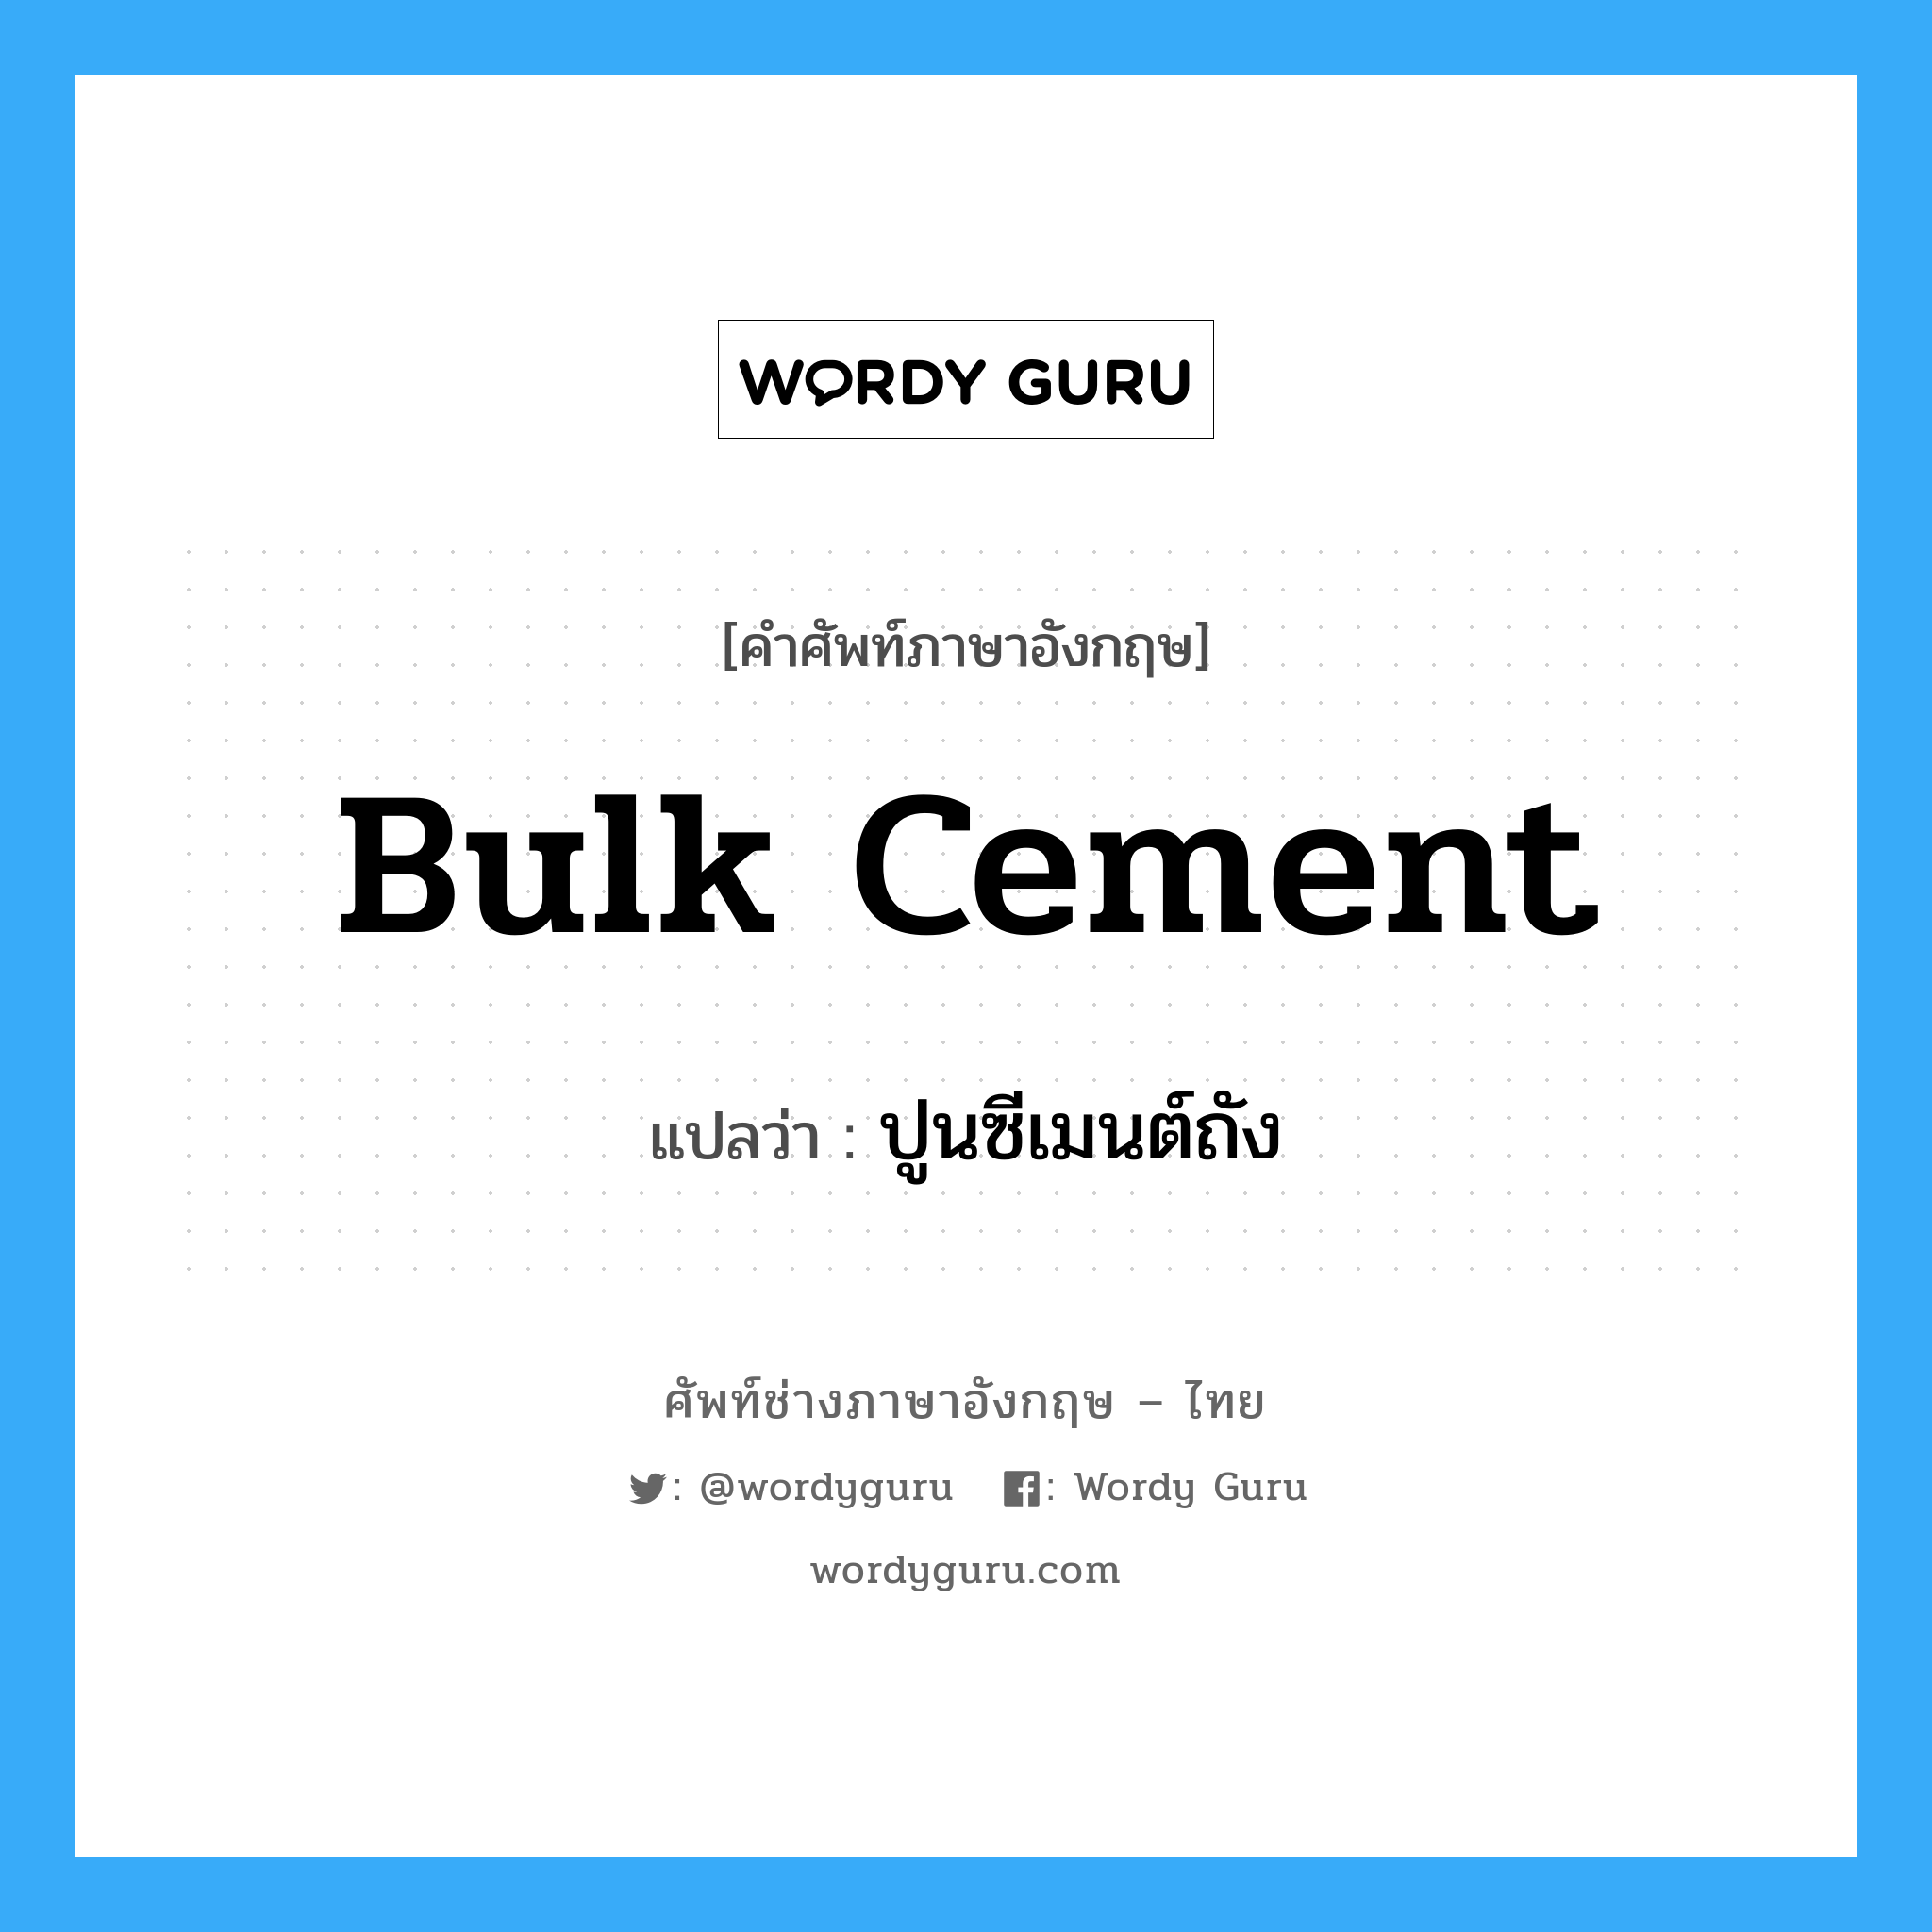 ปูนซีเมนต์ถัง ภาษาอังกฤษ?, คำศัพท์ช่างภาษาอังกฤษ - ไทย ปูนซีเมนต์ถัง คำศัพท์ภาษาอังกฤษ ปูนซีเมนต์ถัง แปลว่า bulk cement